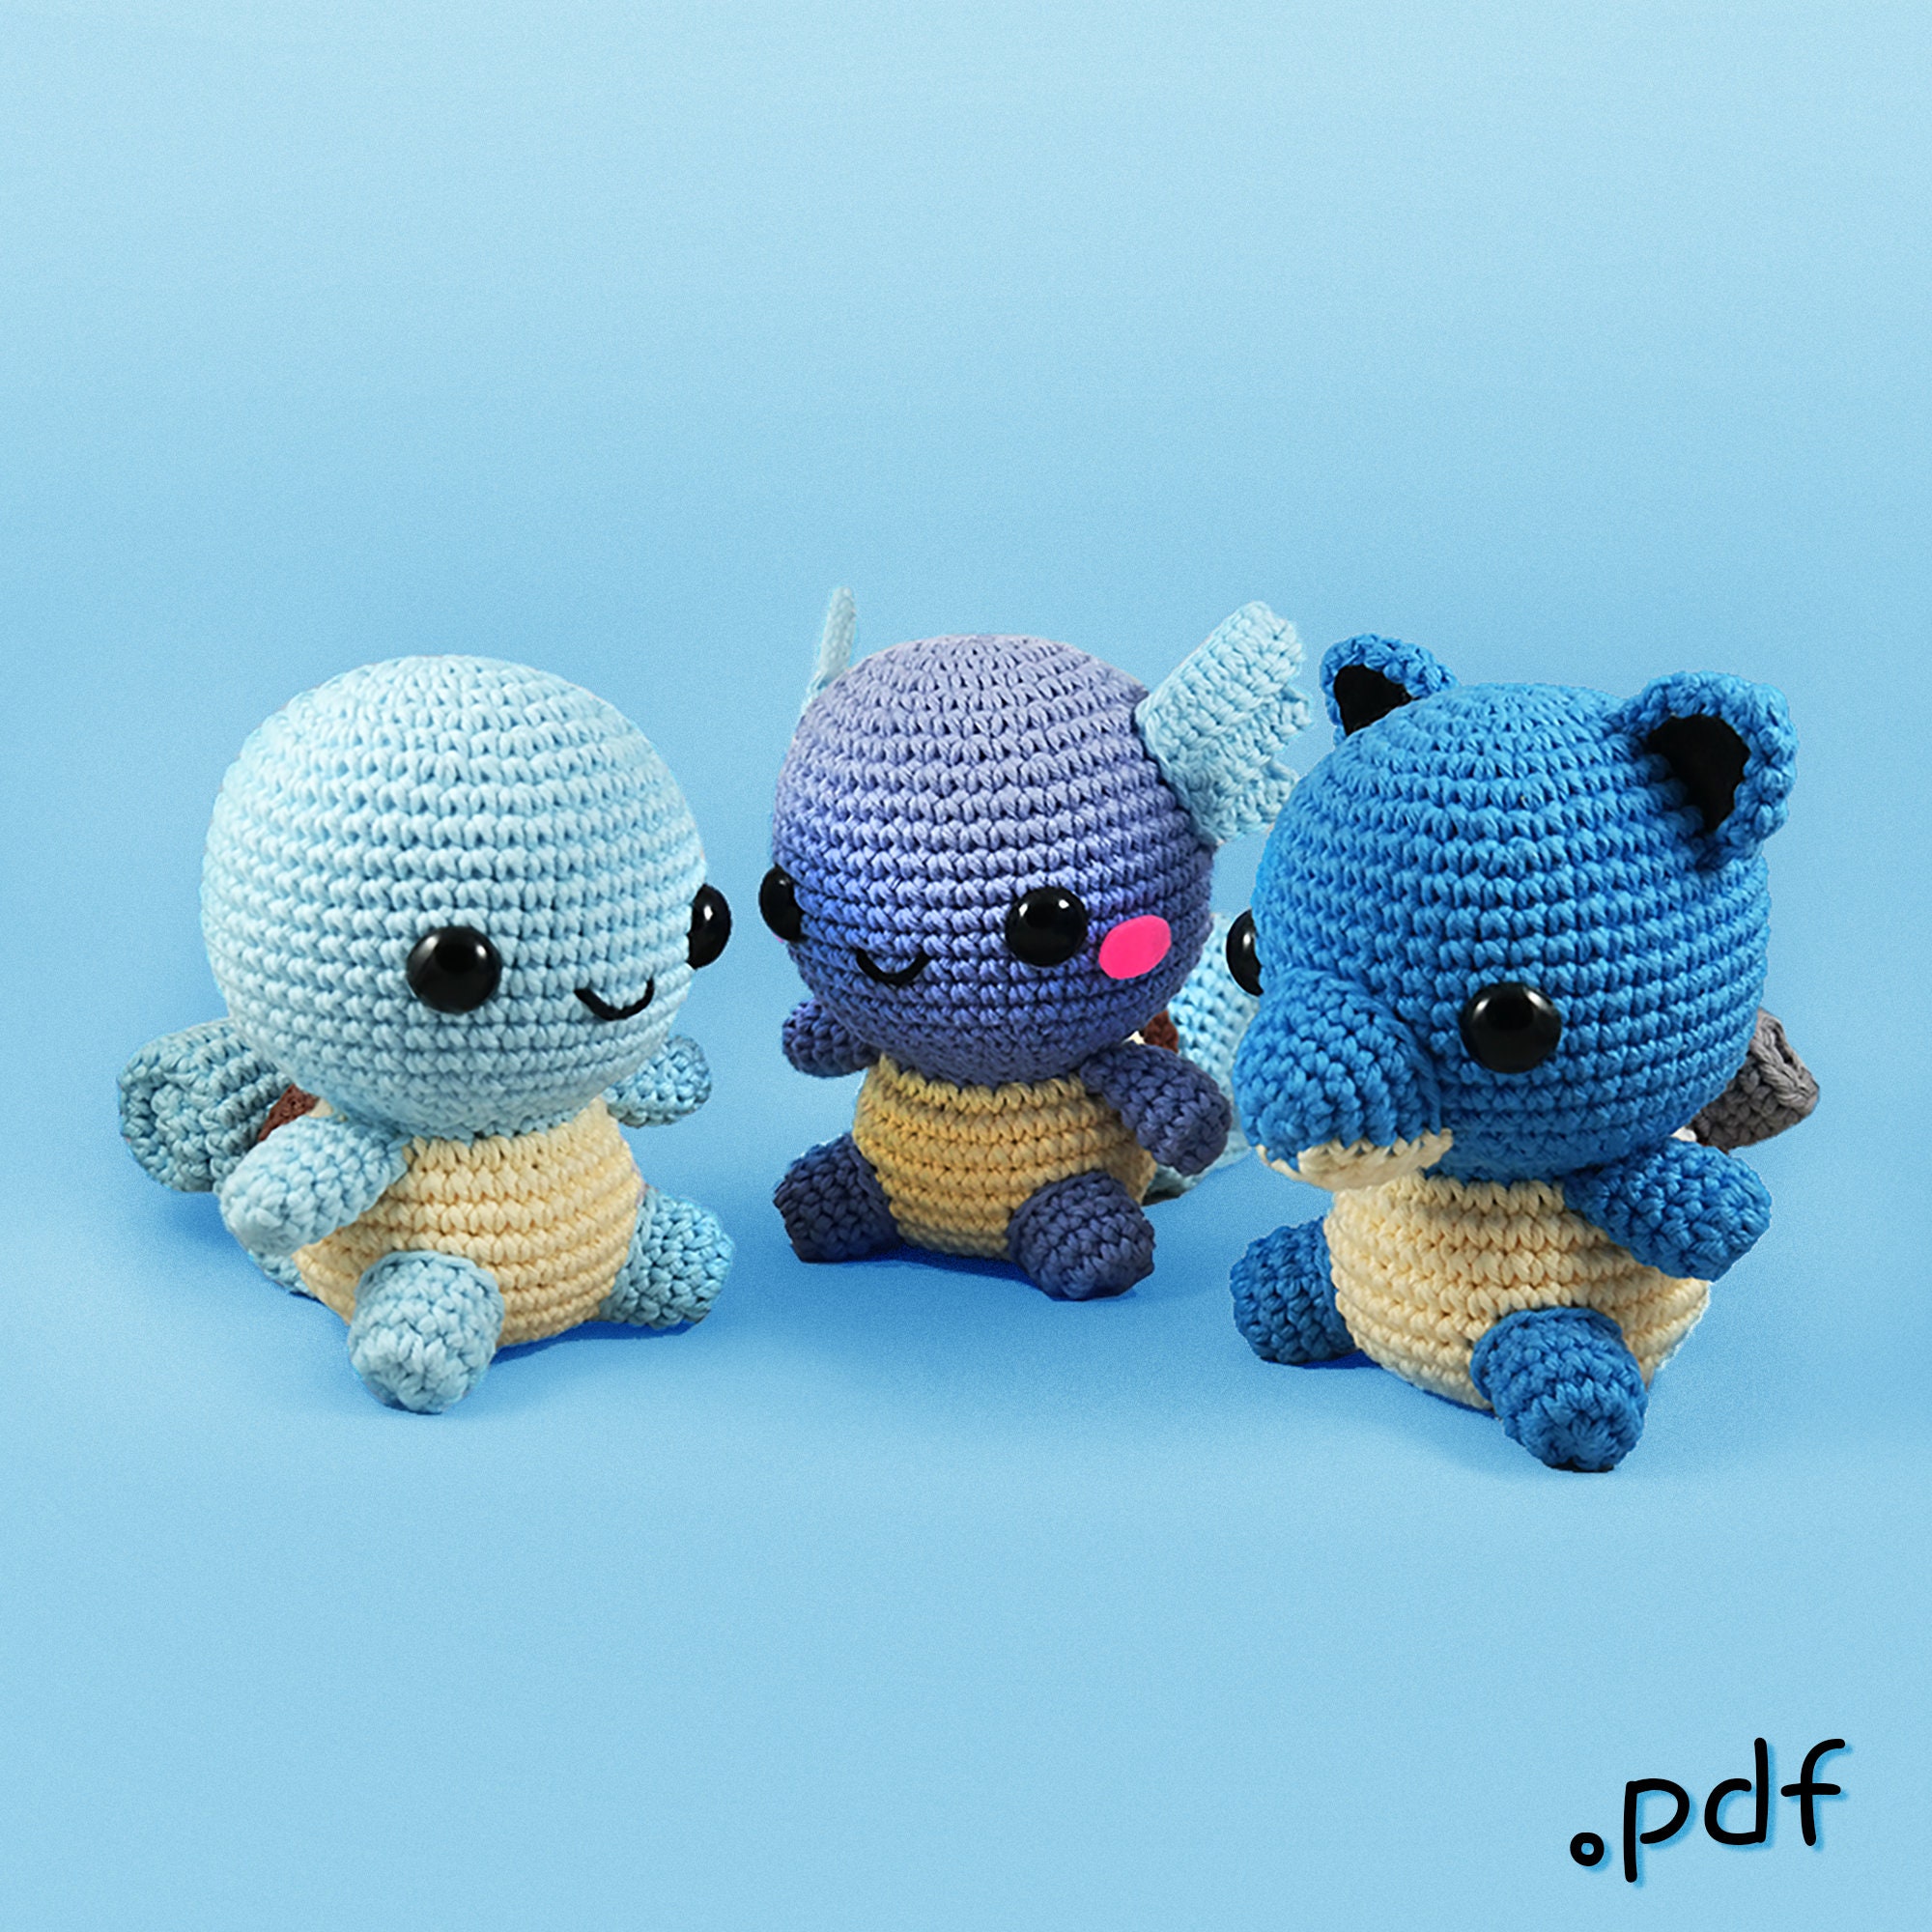 Crochet kit Pokemon PDF Pattern/pattern Amigurumi ENGLISH AND